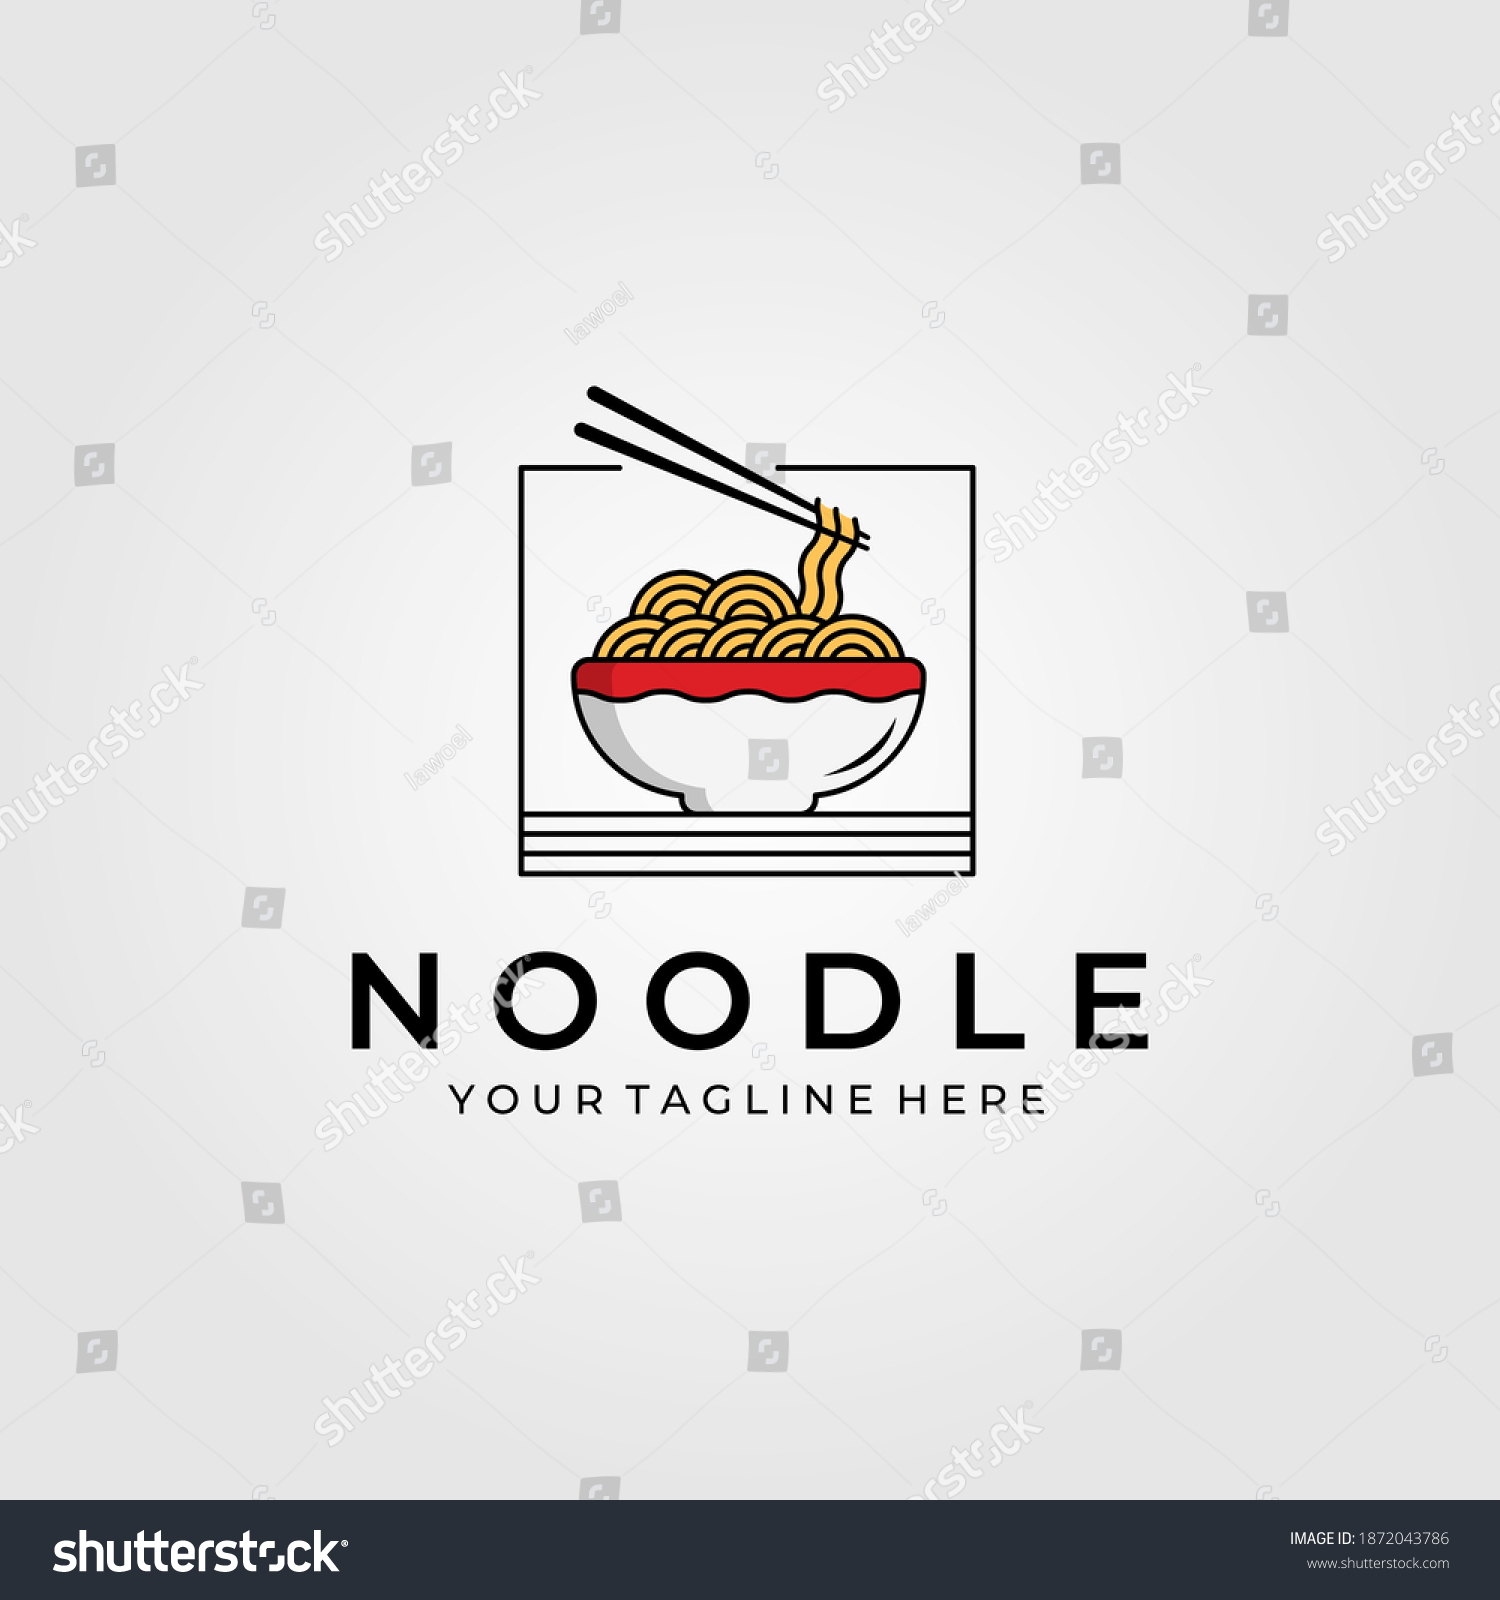 SVG of noodle food with chopsticks logo vector illustration design, chinese or japanese vector symbol svg